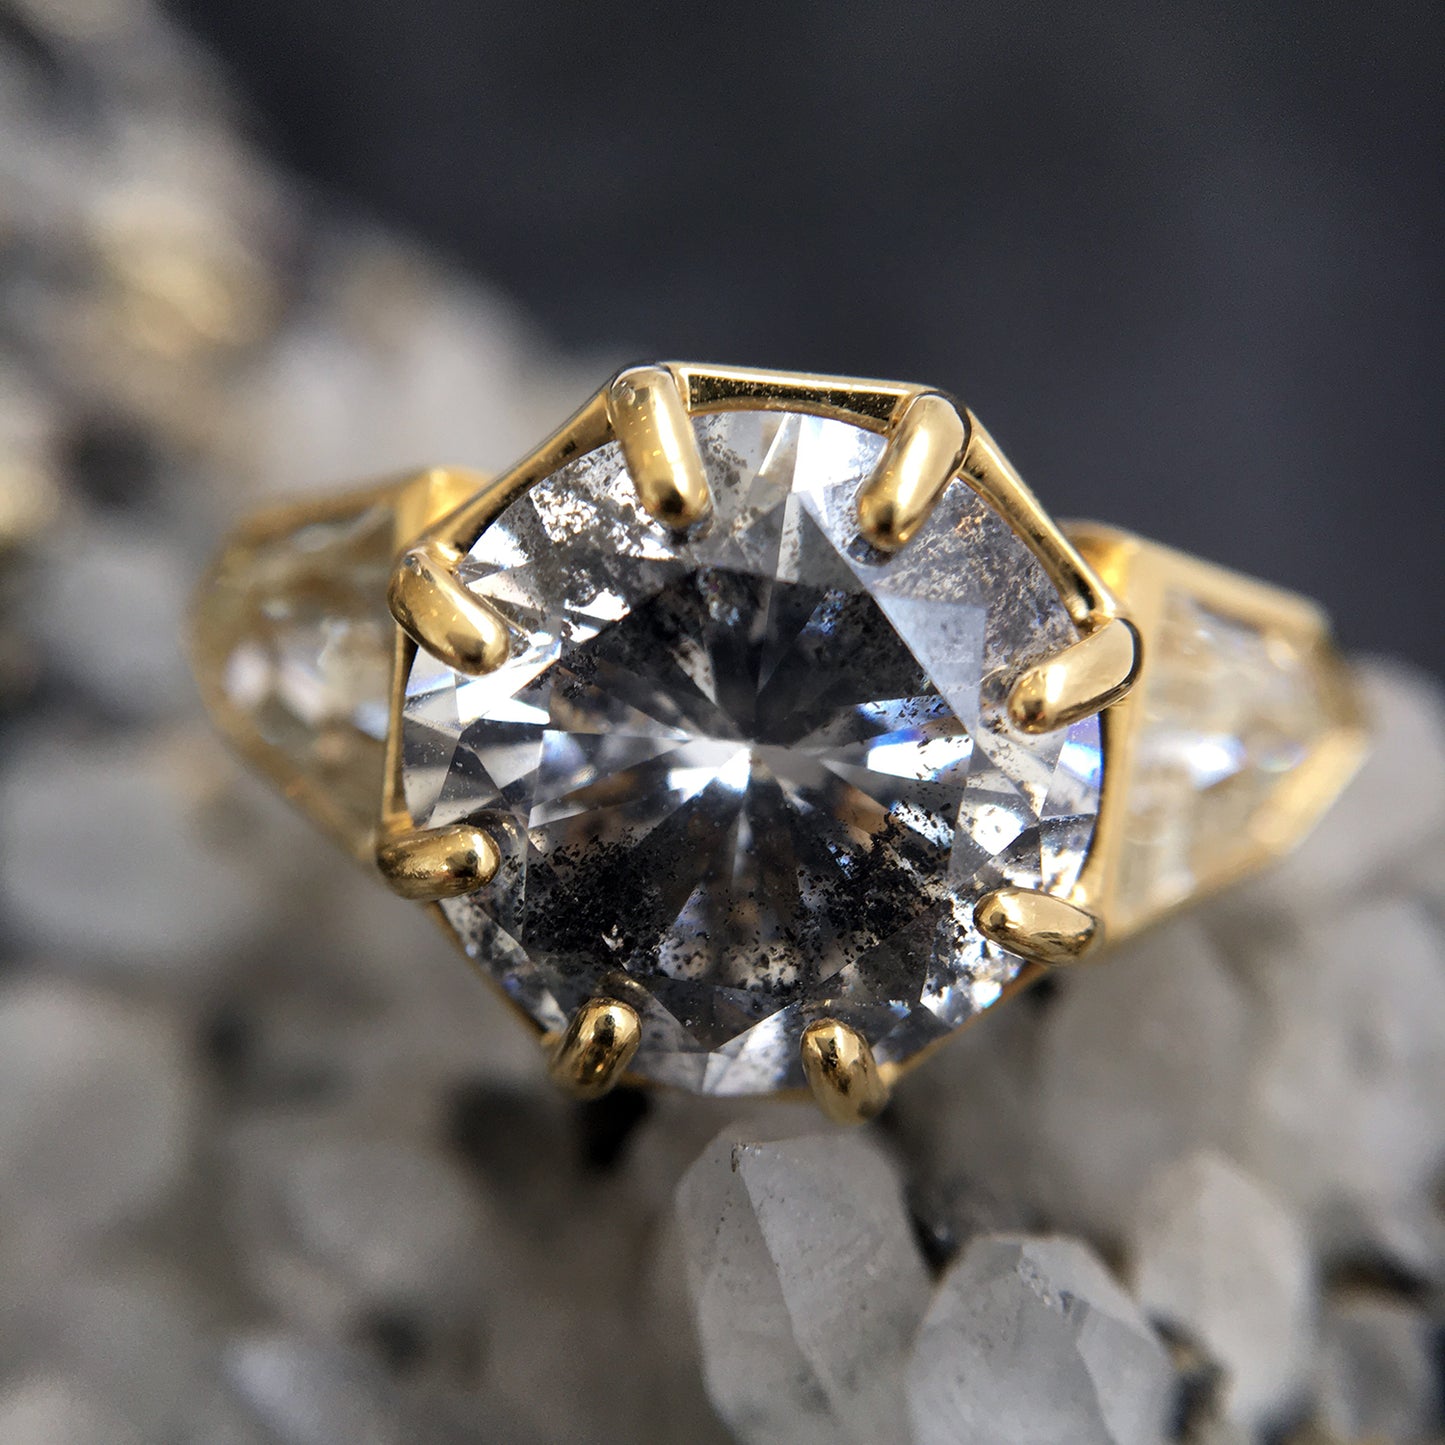 Bright Palace Diamond Ring